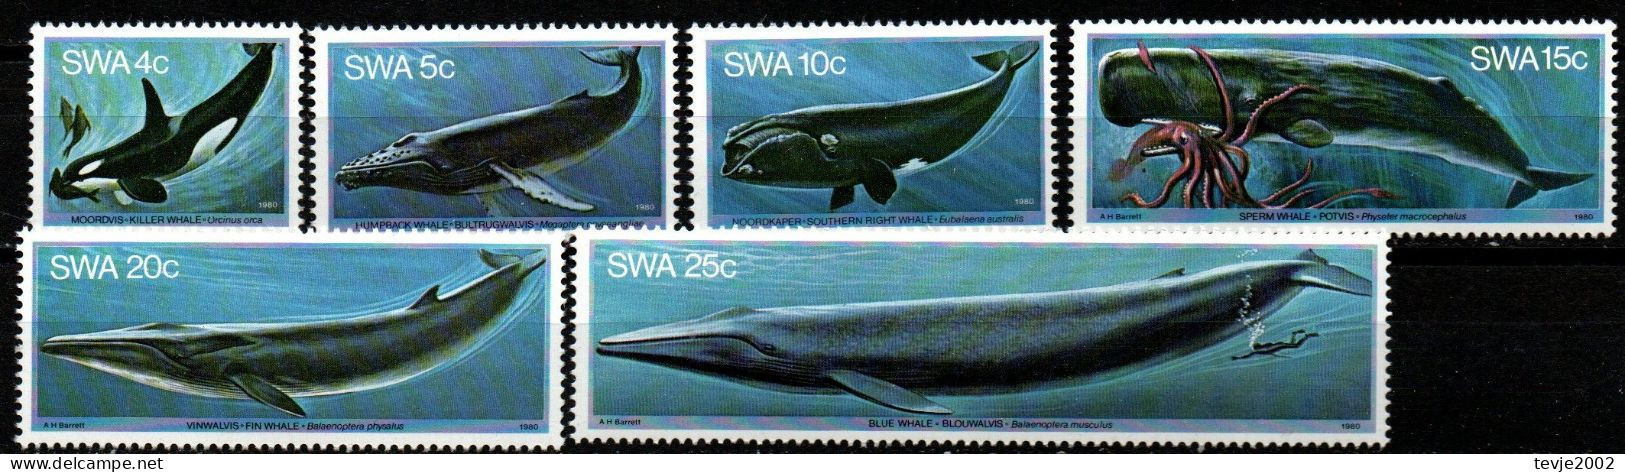 Südwestafrika 1980 - Mi.Nr. 466 - 471 - Postfrisch MNH - Tiere Animals Wale Whales - Baleines